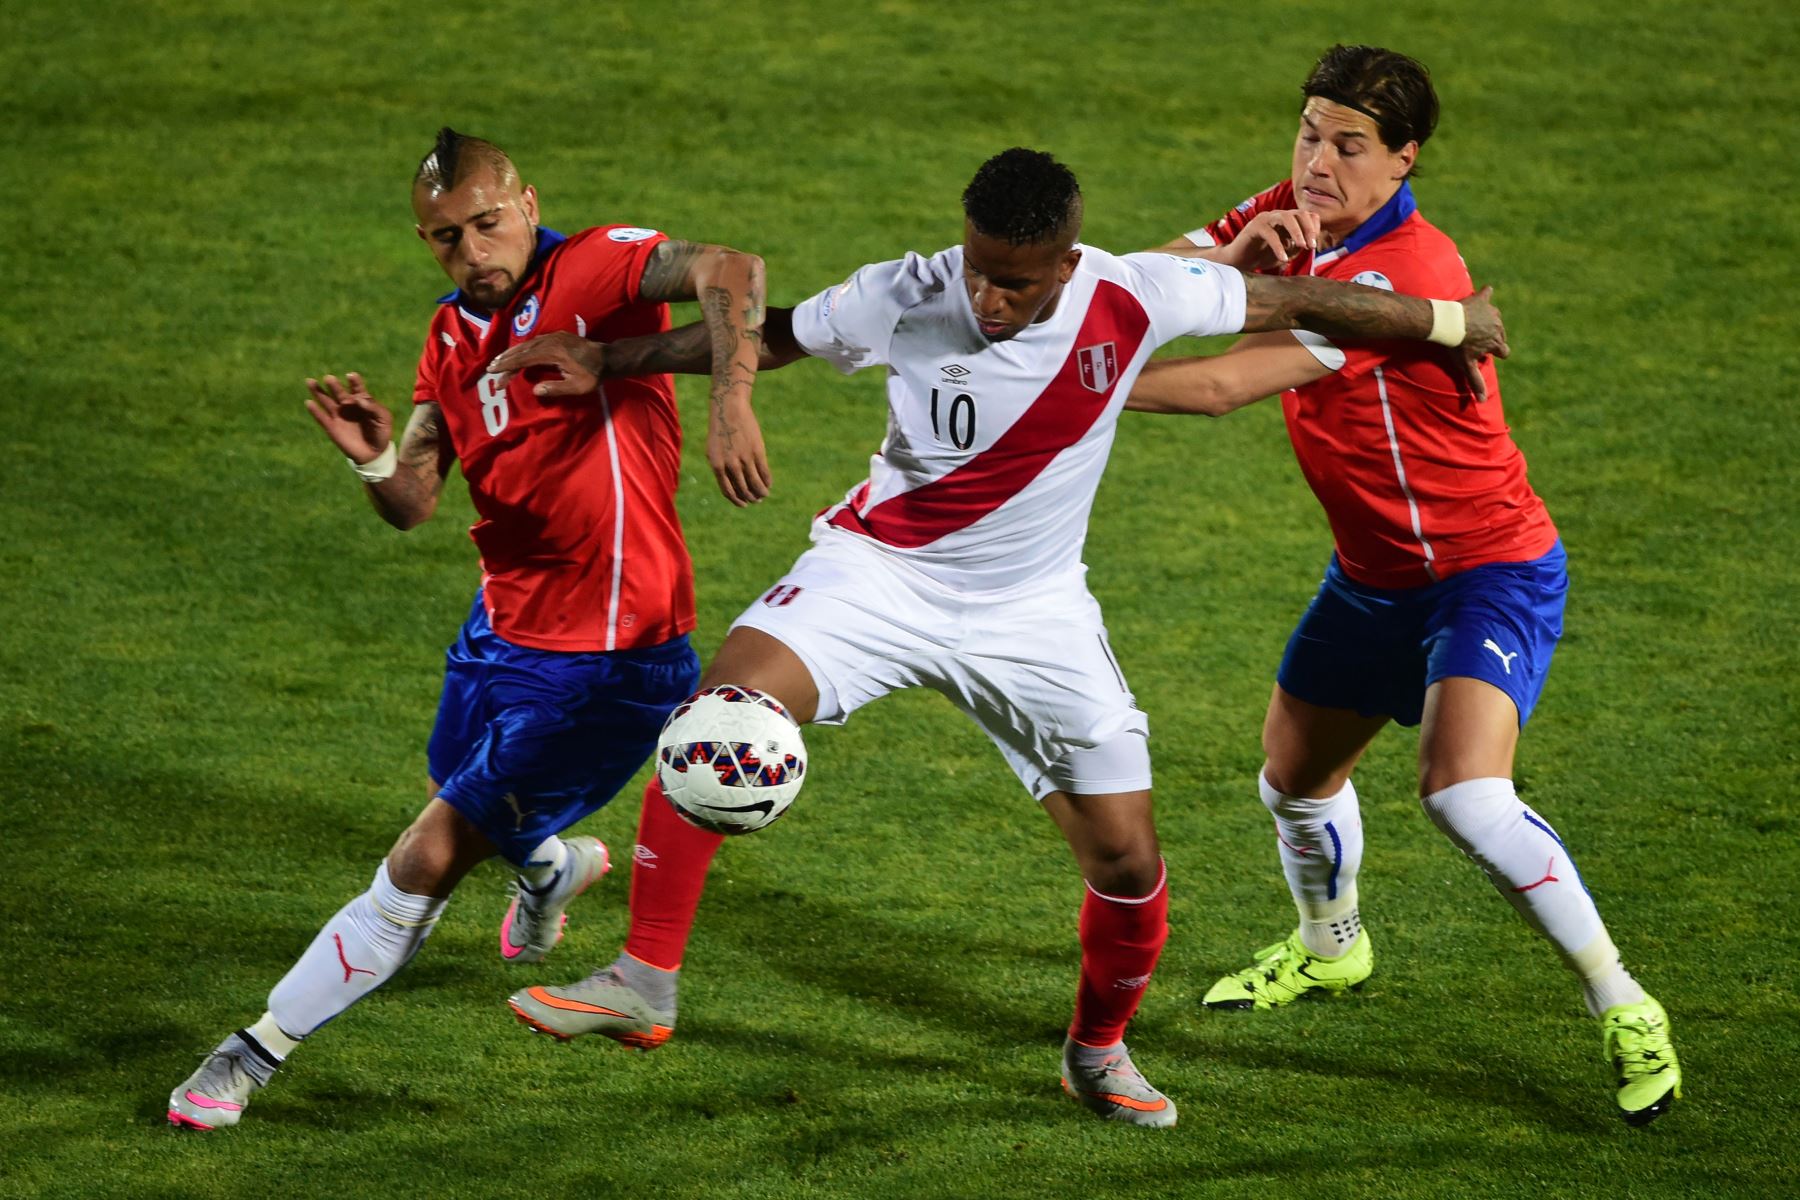 El delantero peruano Jefferson Farfán (C) compite por el balón con el mediocampista chileno Arturo Vidal (L) y el defensor Eugenio Mena durante la semifinal del campeonato de fútbol de la Copa América 2015, en Santiago, el 29 de junio de 2015.
Foto: AFP